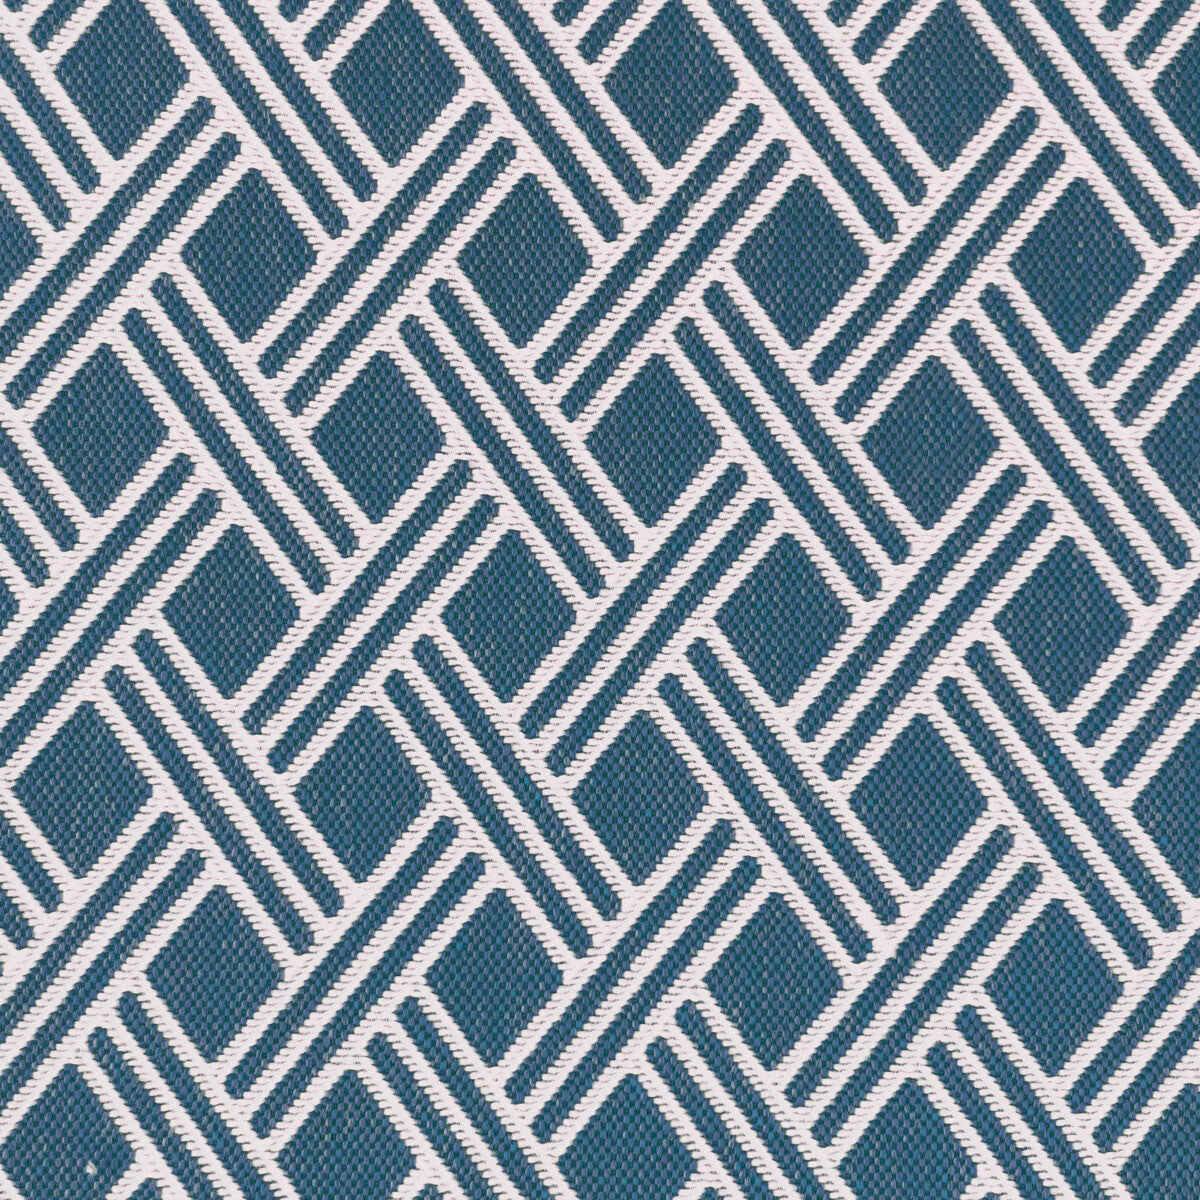 Dorcas fabric in azul color - pattern LCT1060.006.0 - by Gaston y Daniela in the Lorenzo Castillo VI collection